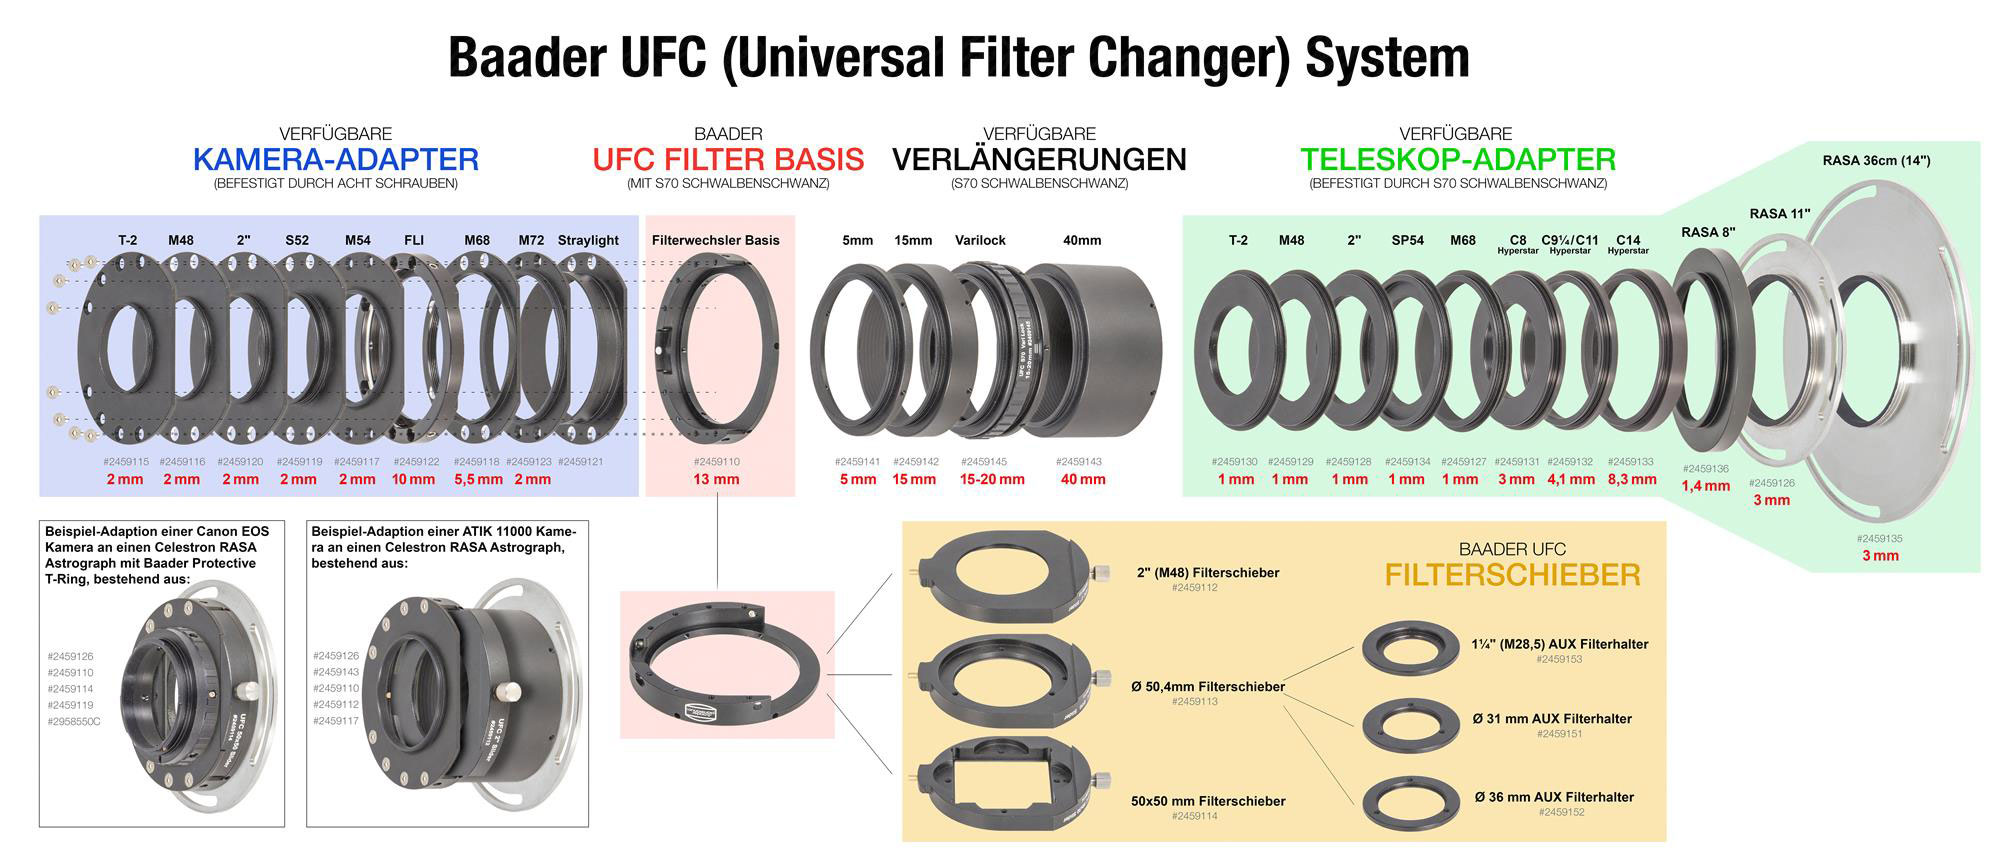 Wie ist das Baader UFC System aufgebaut und wie funktioniert es?